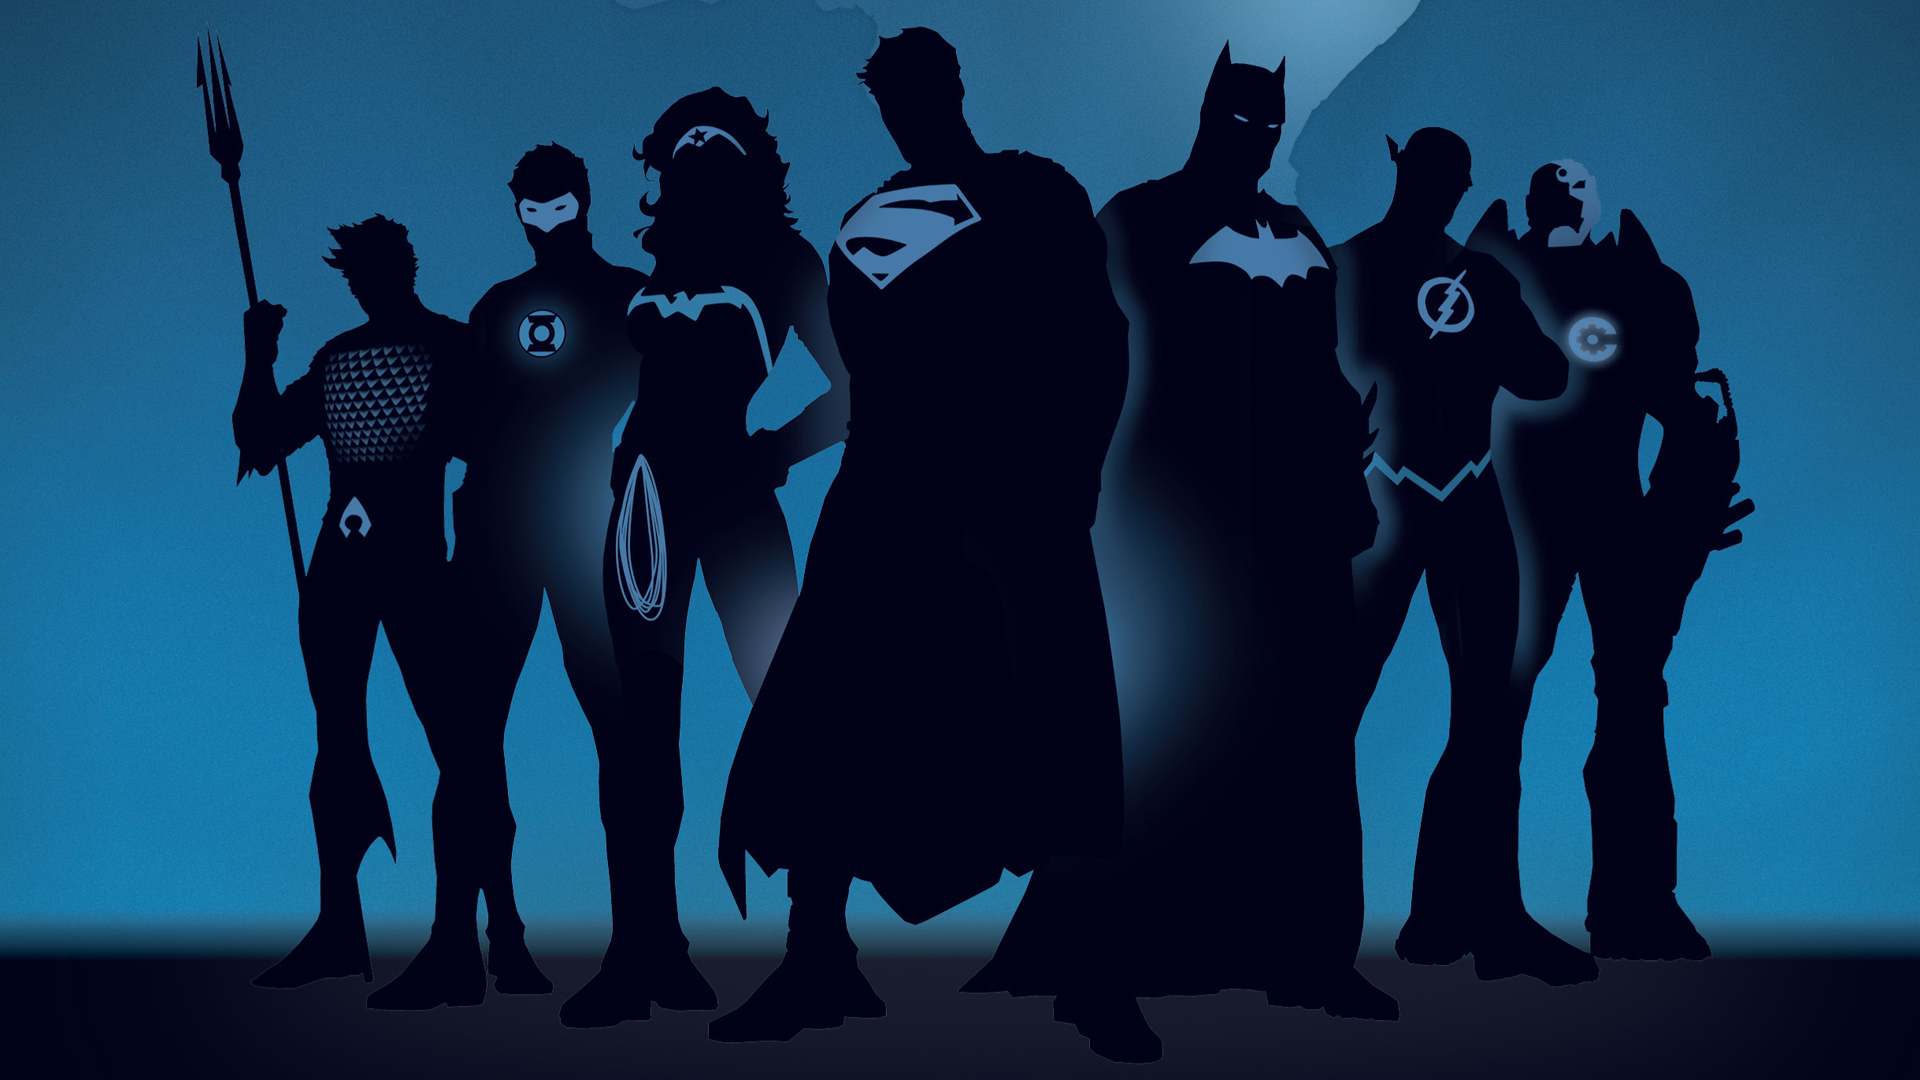 superman, batman, bruce wayne, cyborg (dc comics), dc comics, comics, aquaman, the dark knight, diana prince, justice league, wonder woman, barry allen, flash, green lantern download HD wallpaper